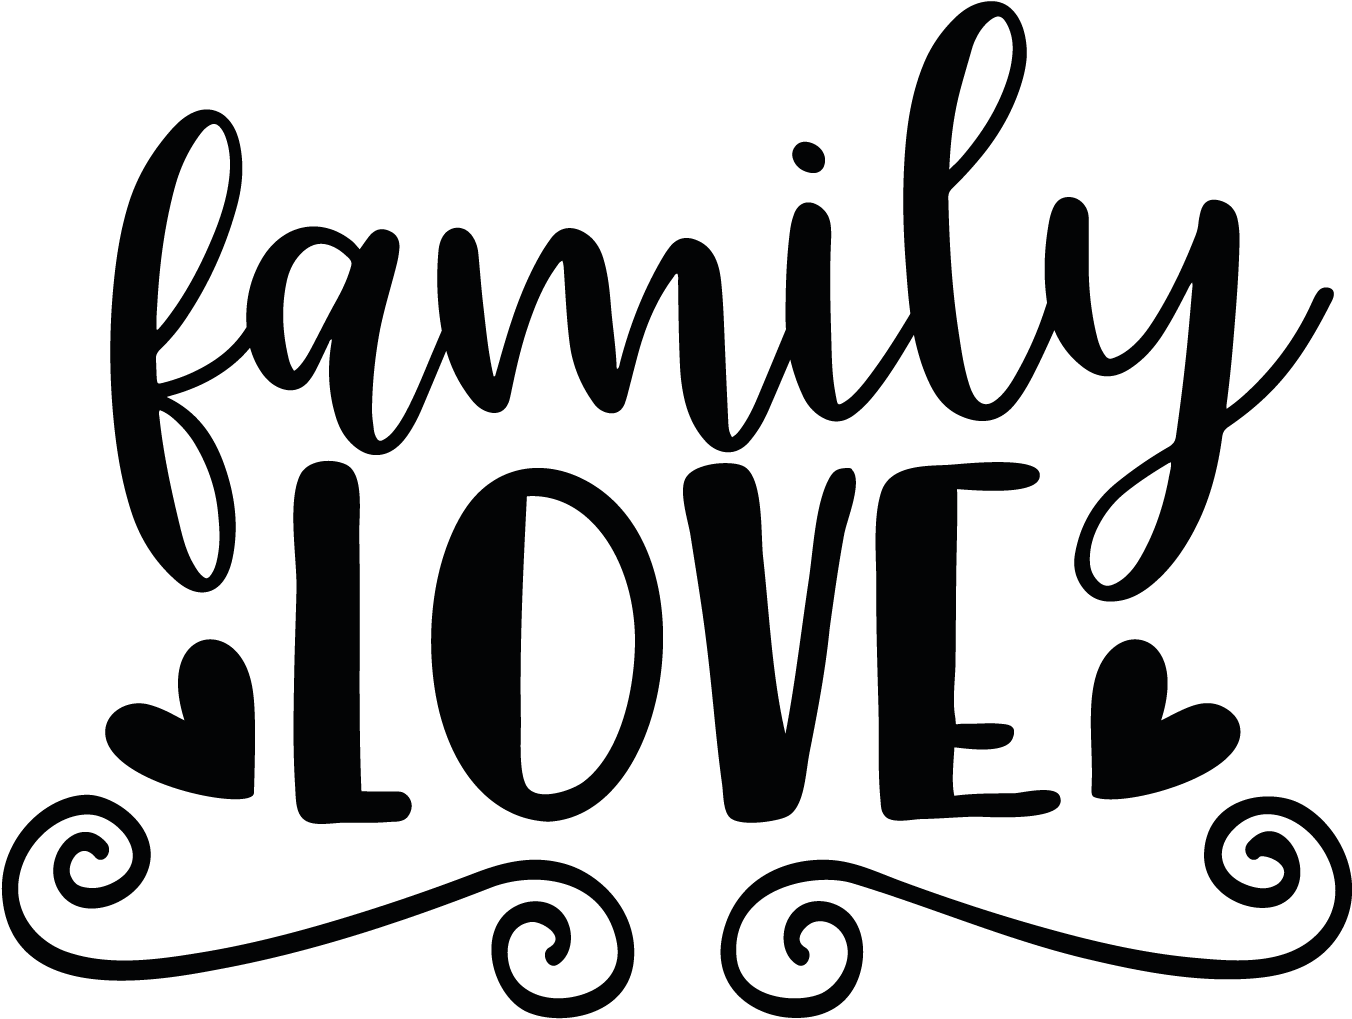 My Family - Family Love (1800x1801)